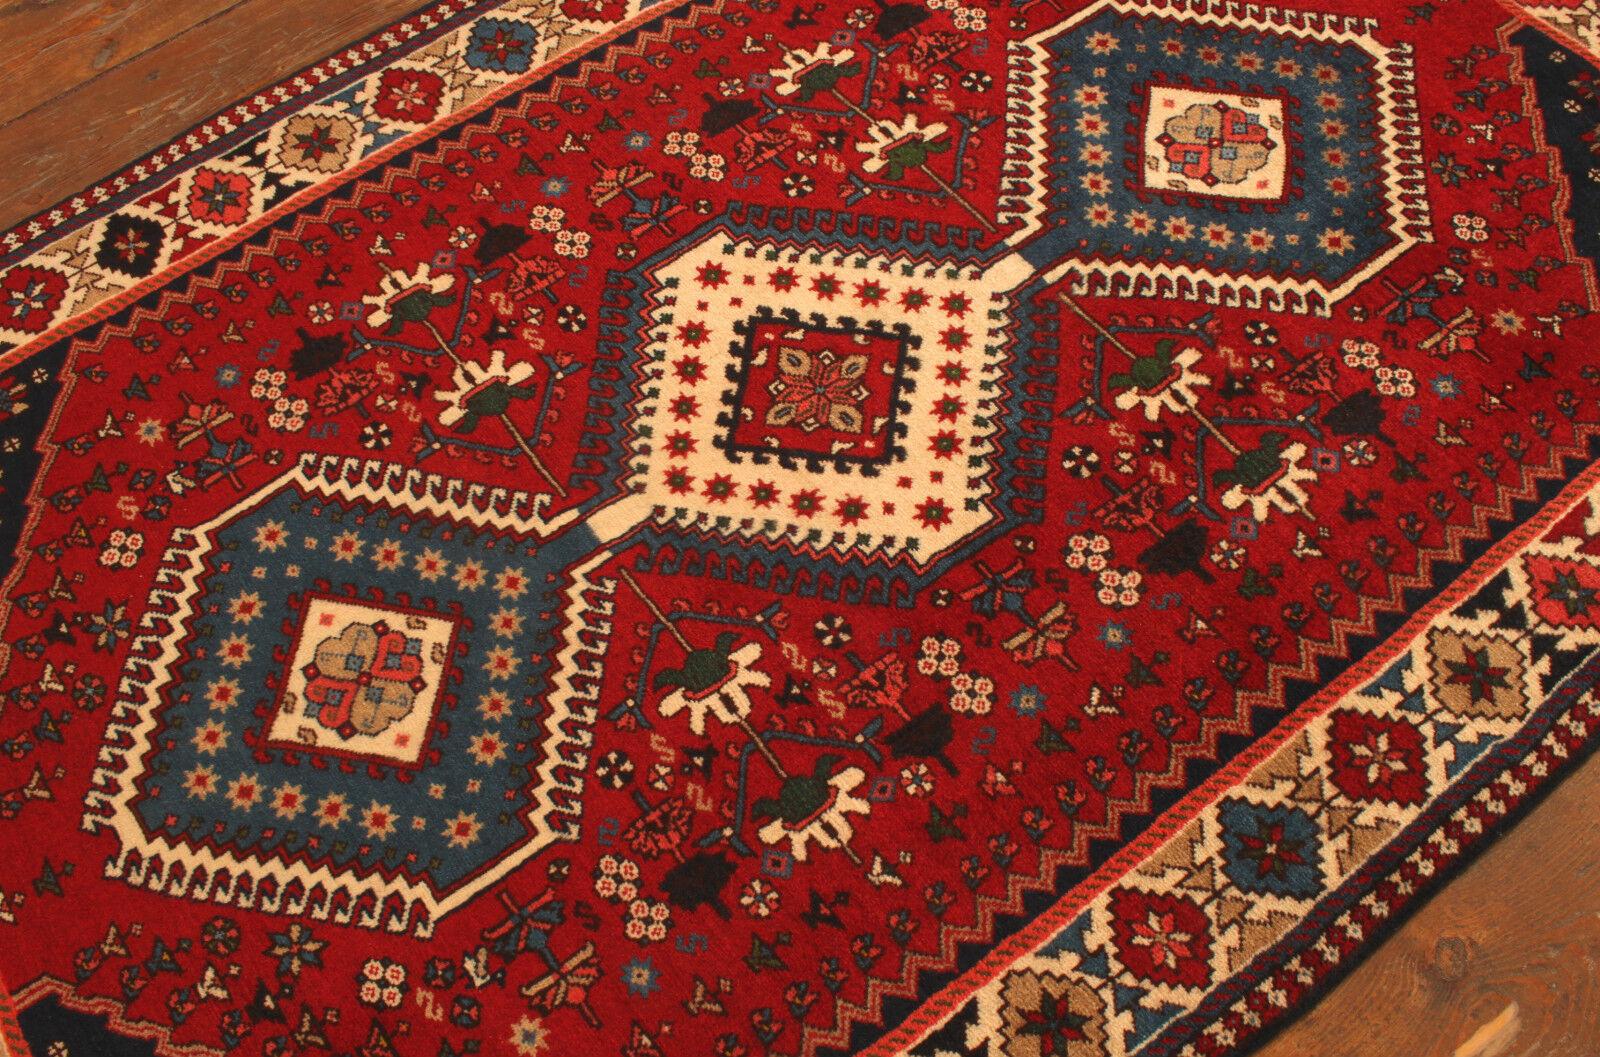 Handgefertigter Vintage Persian Style Yalameh Teppich

Abmessungen: 3,4' x 5,2' (ungefähr 106 cm x 160 cm)
MATERIAL: 100% Wolle
Epoche: 1990er Jahre
Zustand: Ausgezeichnet, wie neu

Entdecken Sie die Faszination dieses handgefertigten